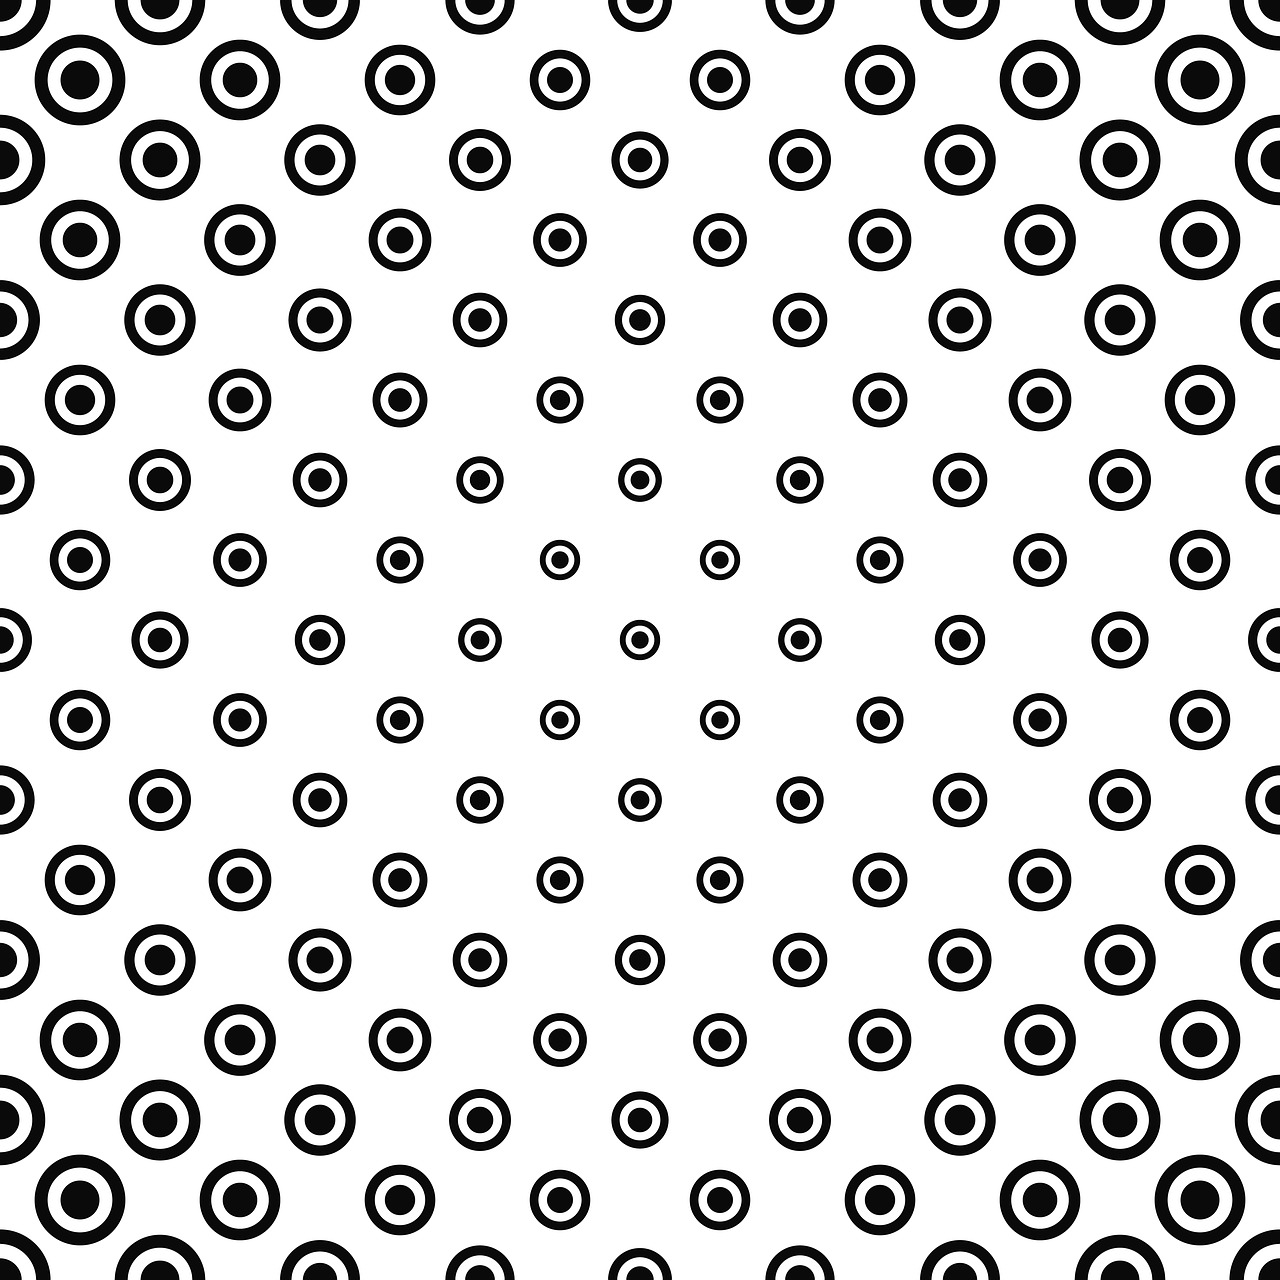 circle dot pattern free photo